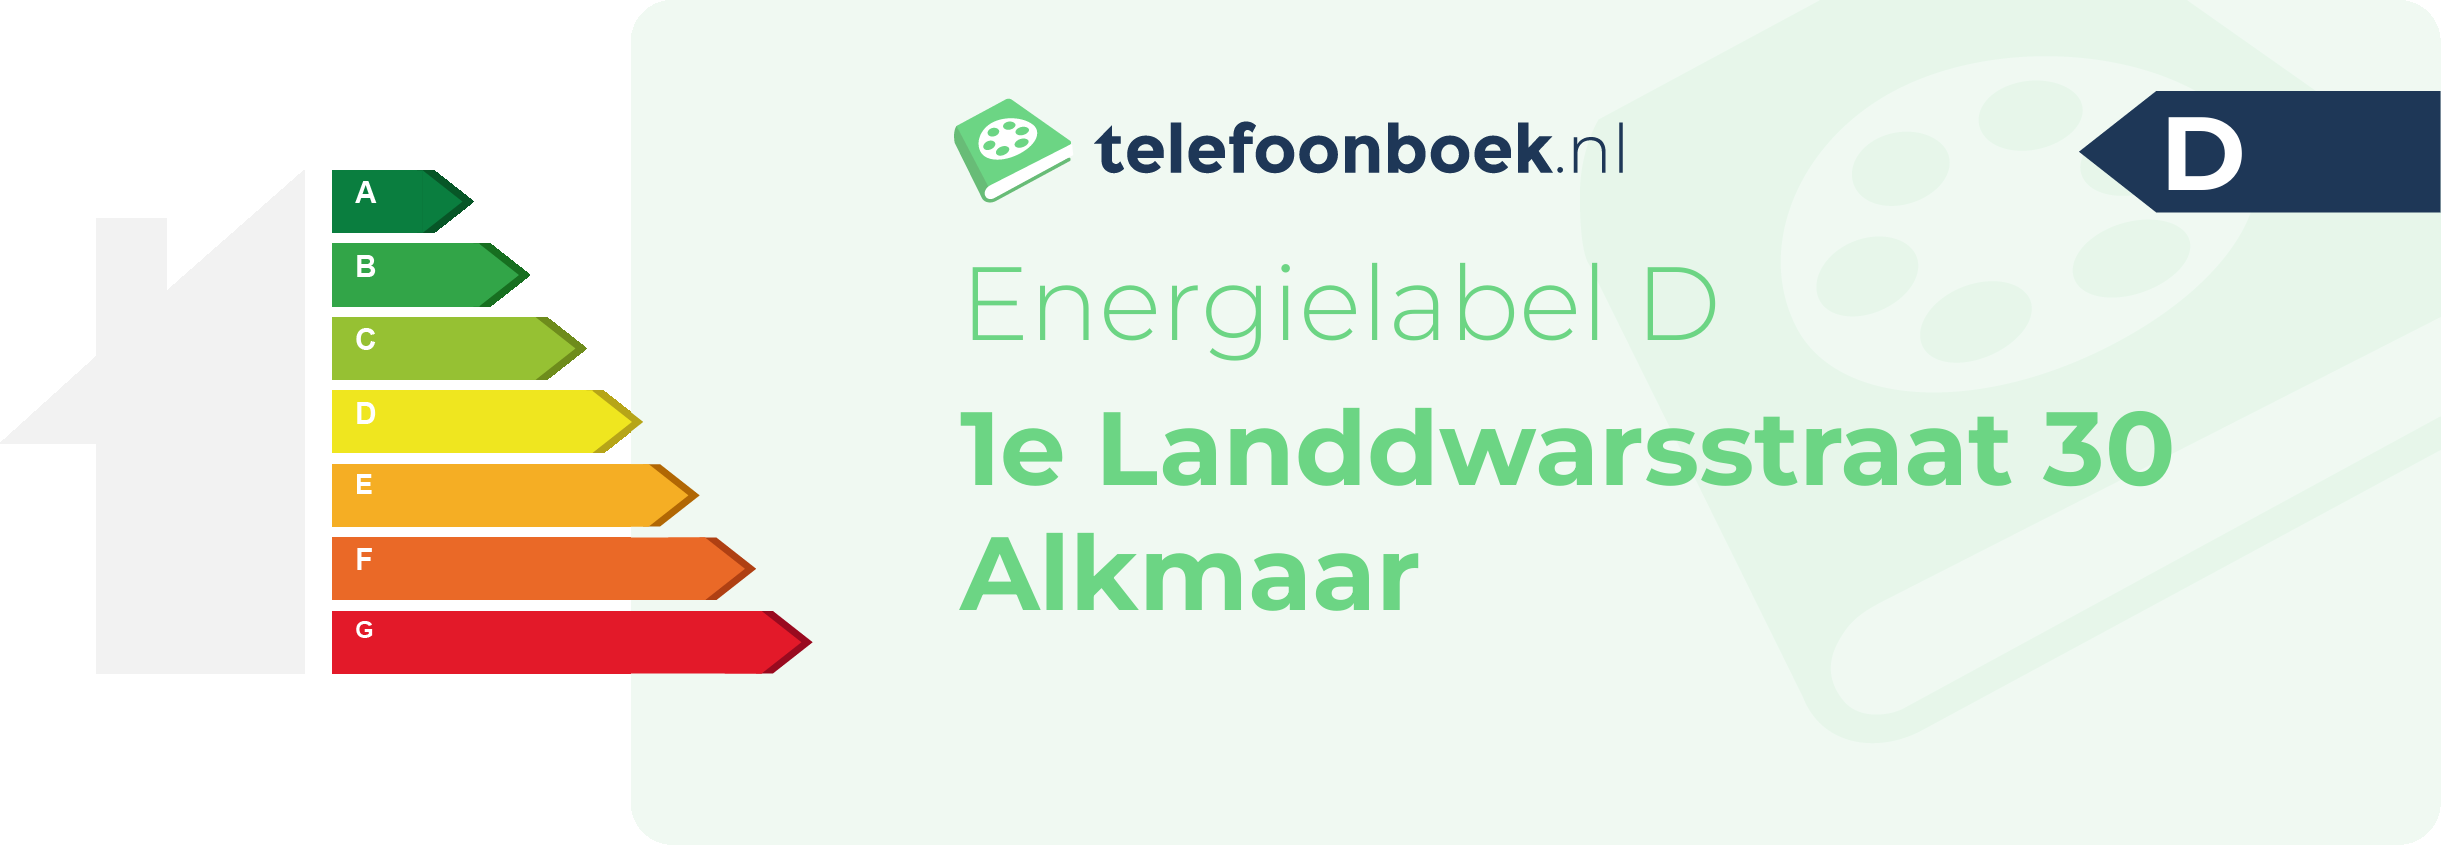 Energielabel 1e Landdwarsstraat 30 Alkmaar